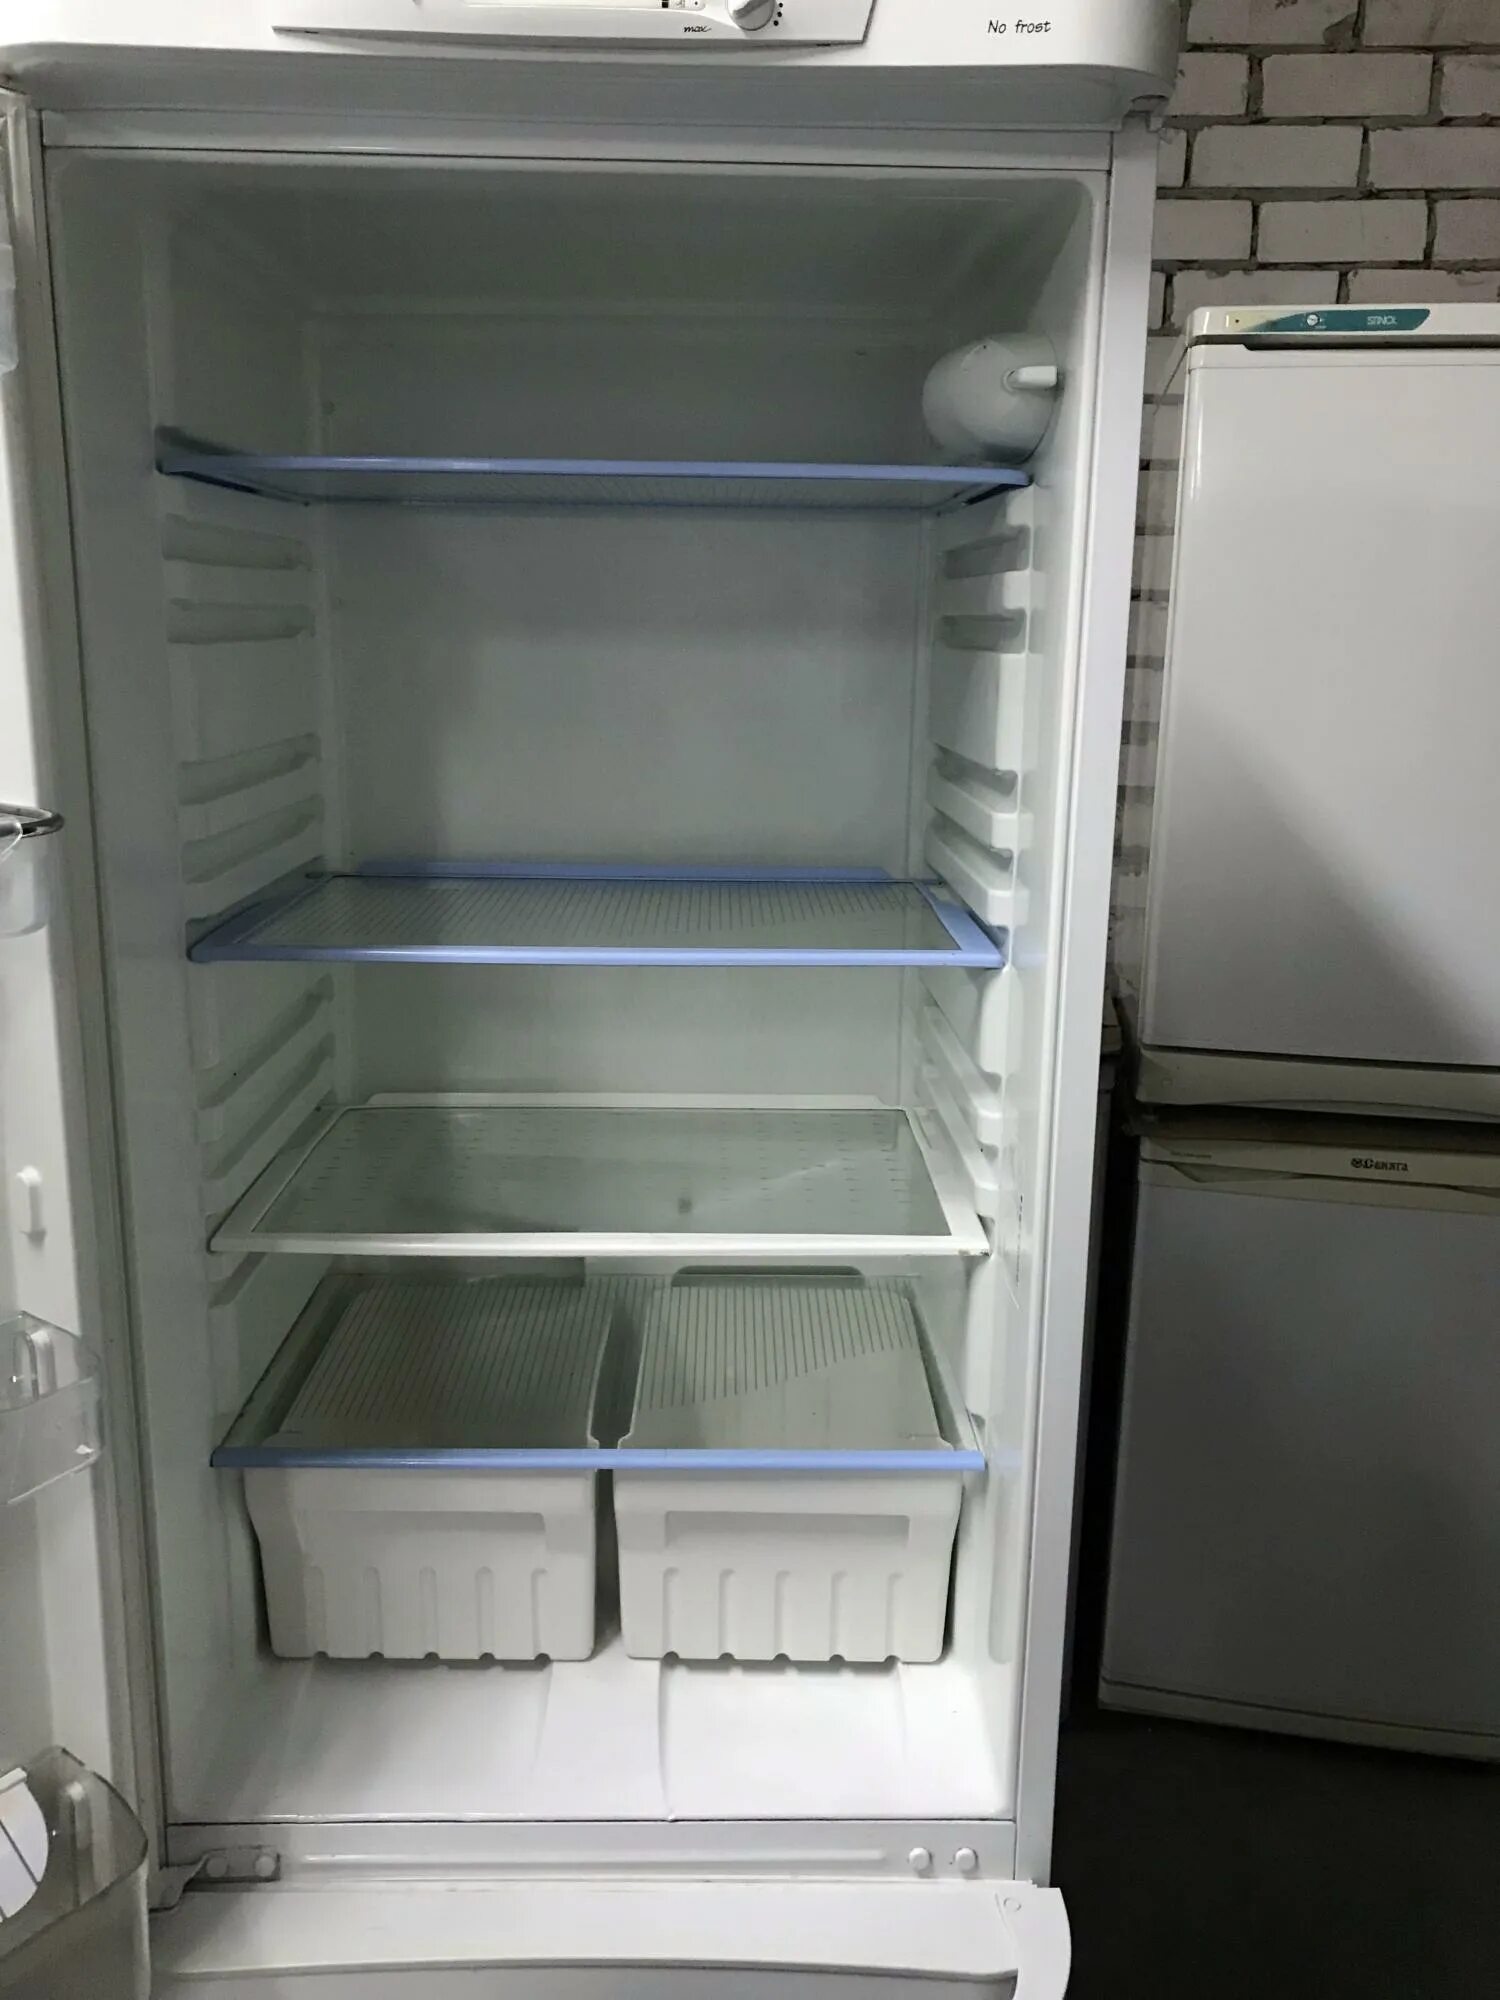 Холодильник Индезит двухкамерный ноу Фрост 185 см. Холодильник Индезит no Frost двухкамерный. Холодильник индезит двухкамерный модели